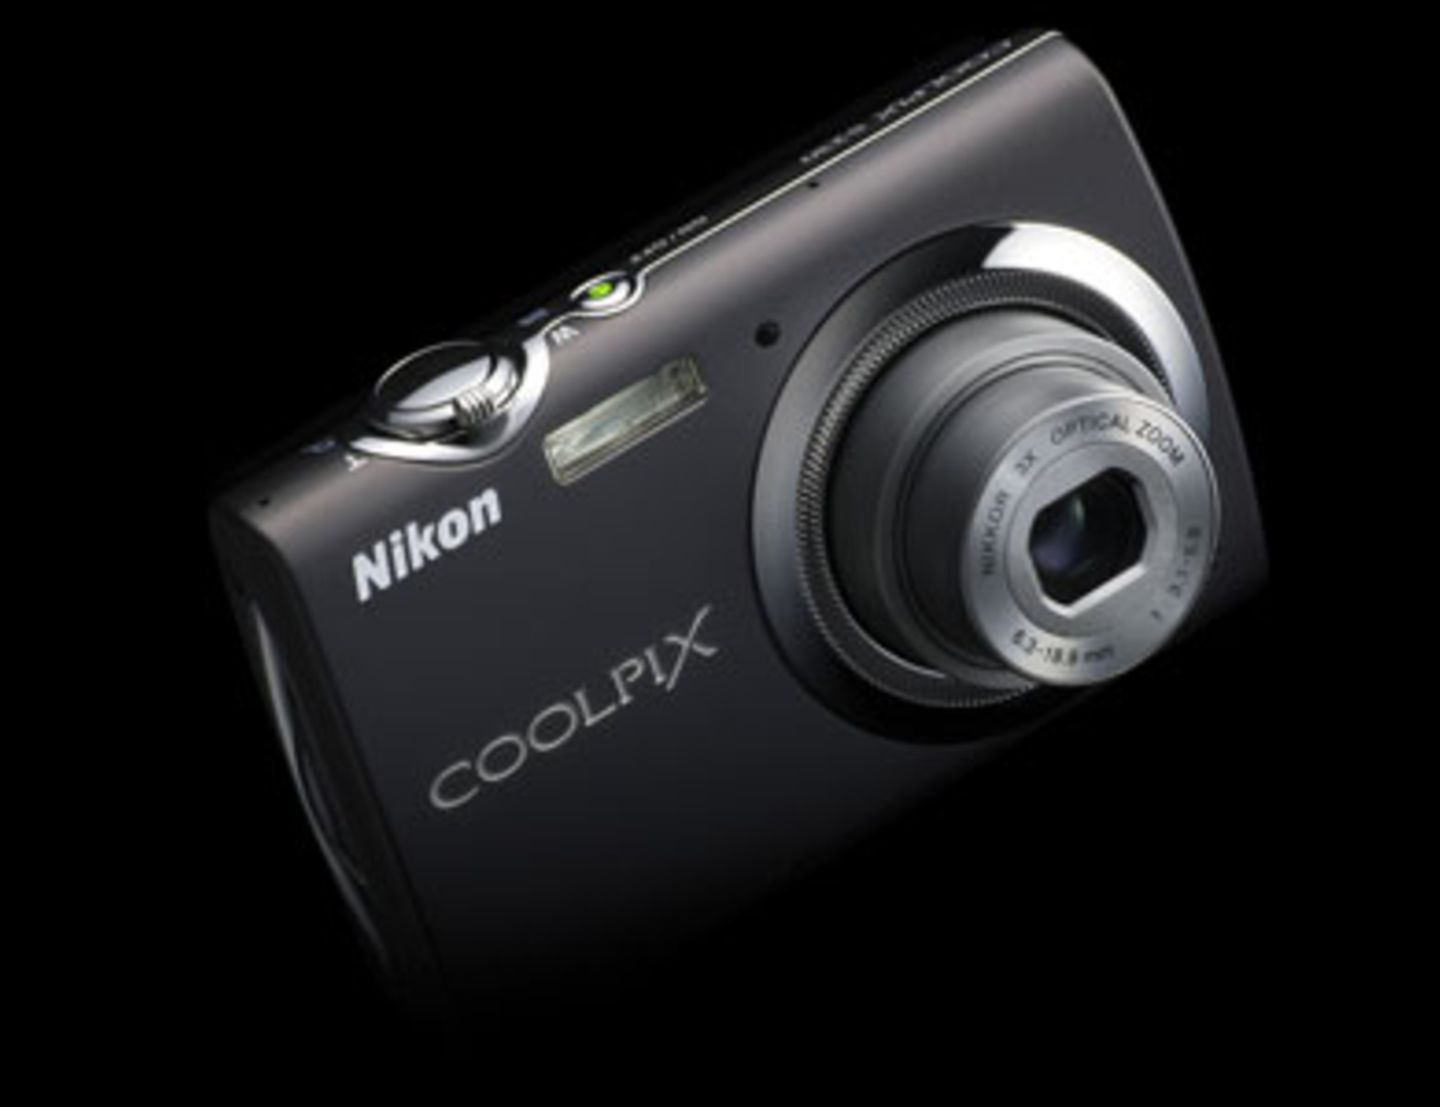 Die 10-Megapixel-Kamera Nikon S230 bietet als besonderes Highlight eine Funktion zum Zeichnen und für handschriftliche Notizen. Außerdem eine Motivautomatik, hohen ISO-Empfindlichkeitsstufen und eine schnelle Bildbearbeitungsfunktion. Um 210 Euro. Mehr Informationen findet ihr bei Nikon.